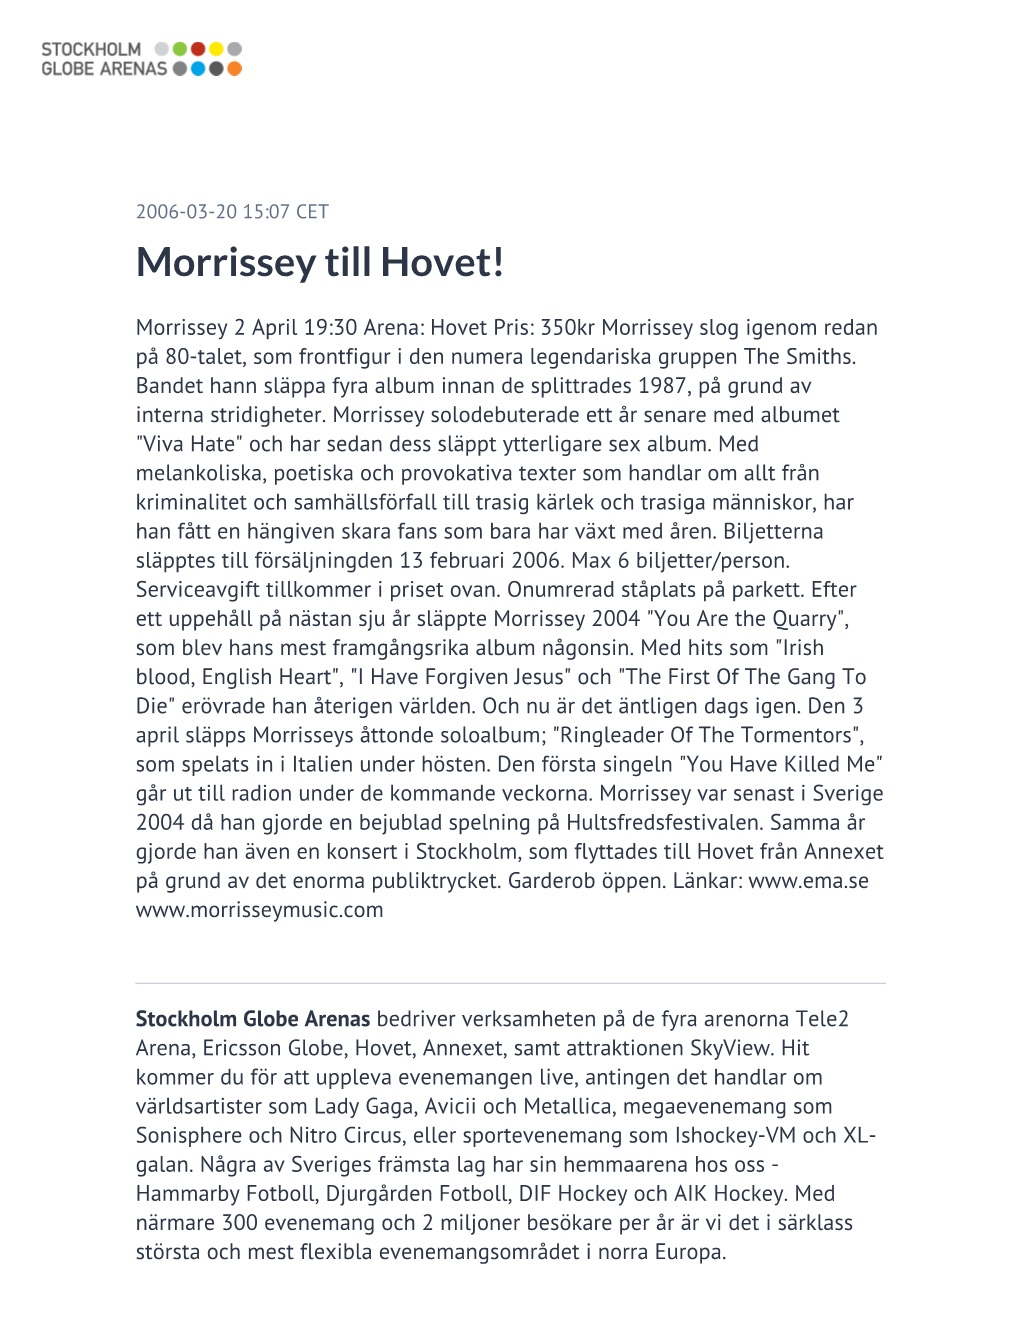 Morrissey Till Hovet!